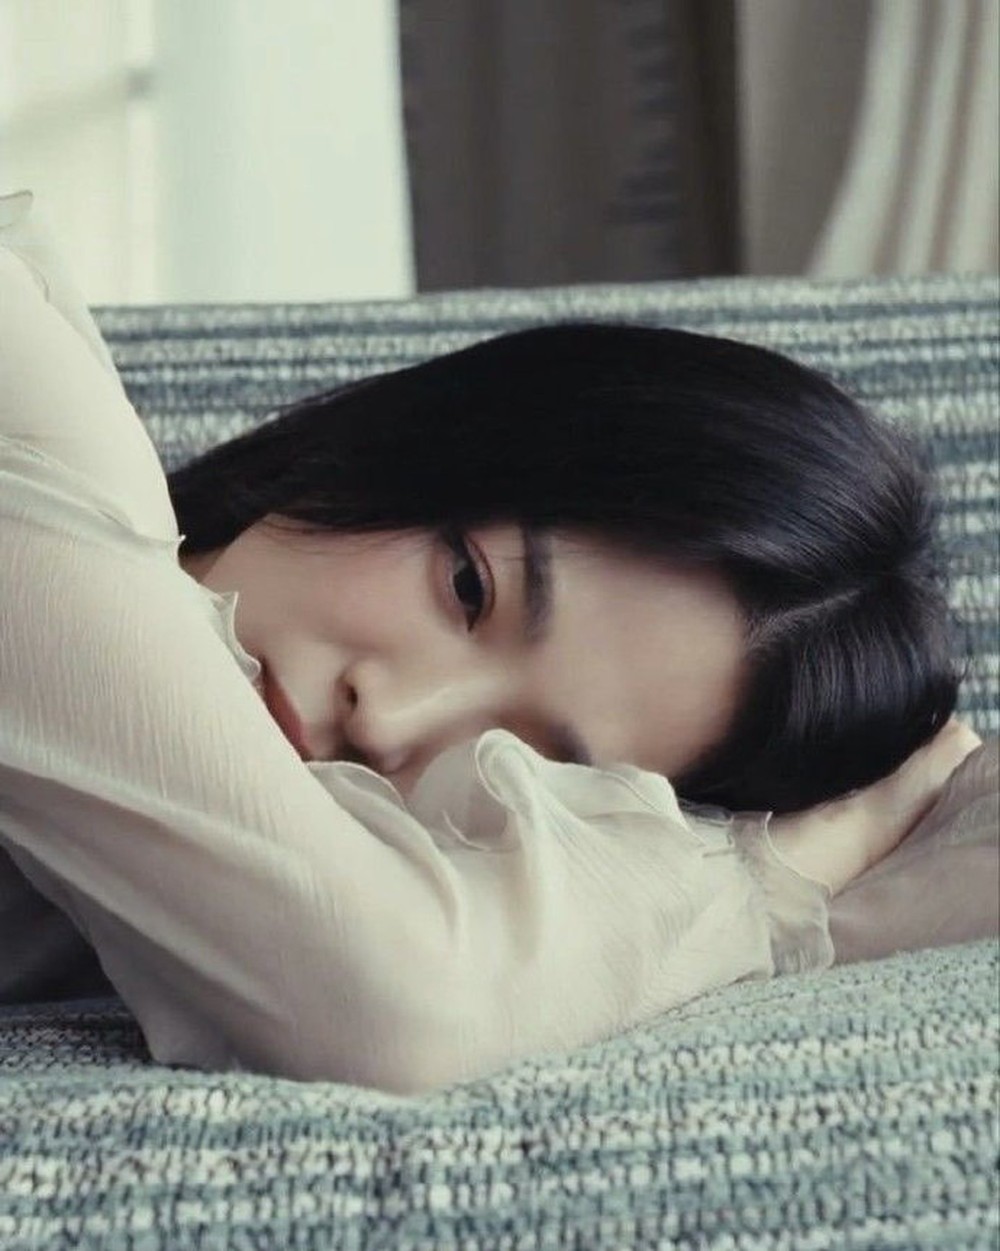 Song Hye Kyo trả lời phỏng vấn sau khi Song Joong Ki lên chức bố: Tôi cũng là con người, cũng thấy mệt mỏi - Ảnh 5.